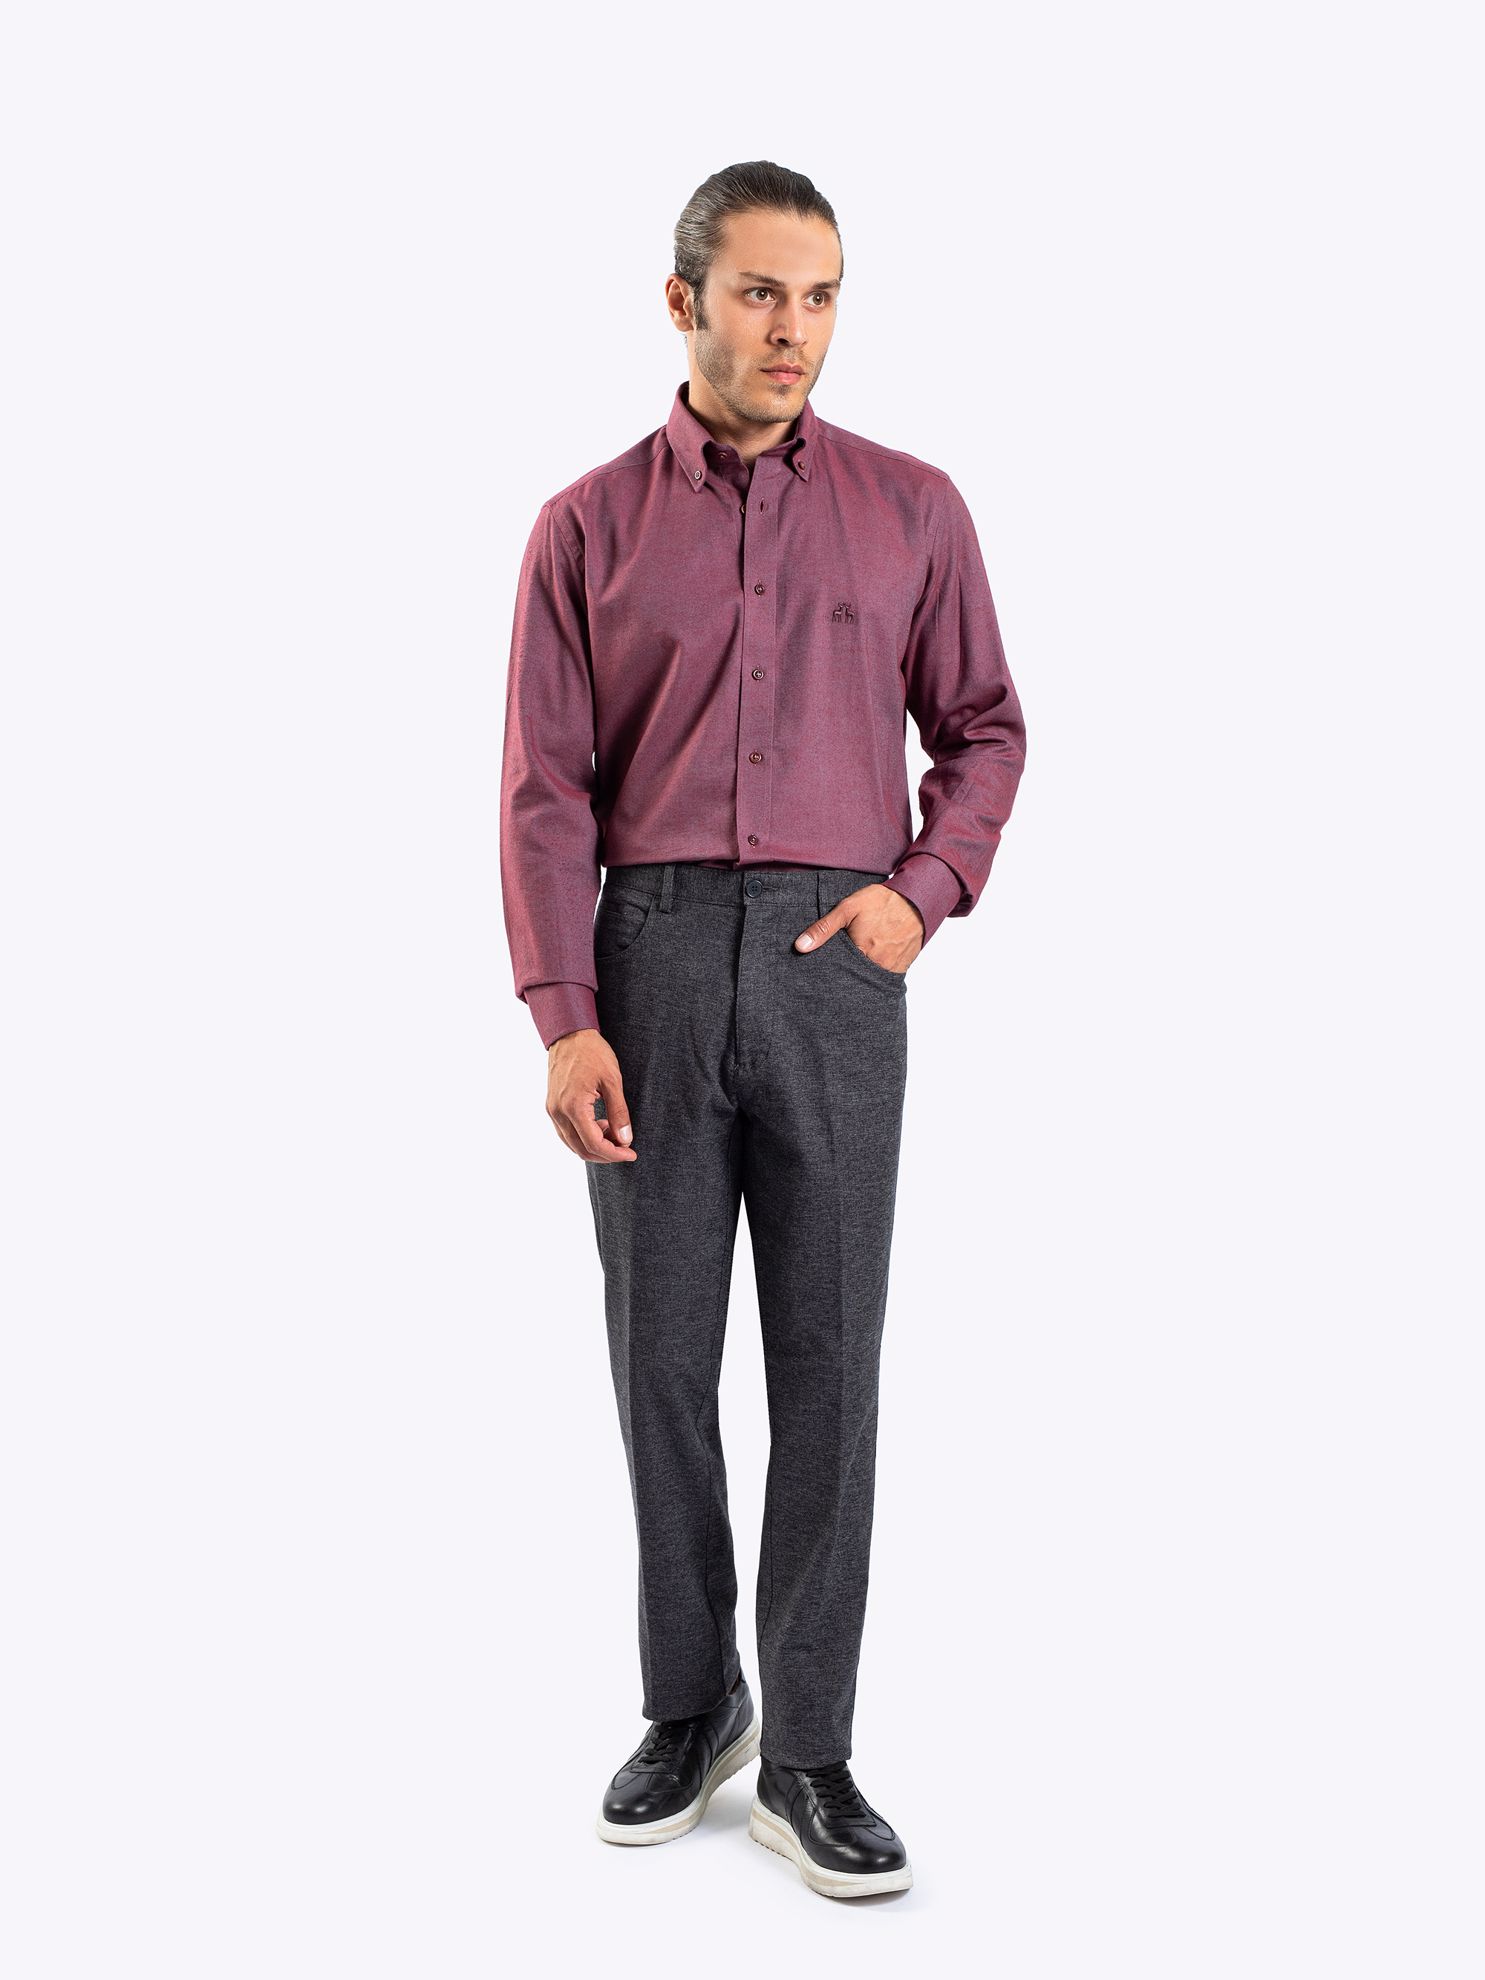 Karaca Erkek 4 Drop Pantolon-Gri. ürün görseli